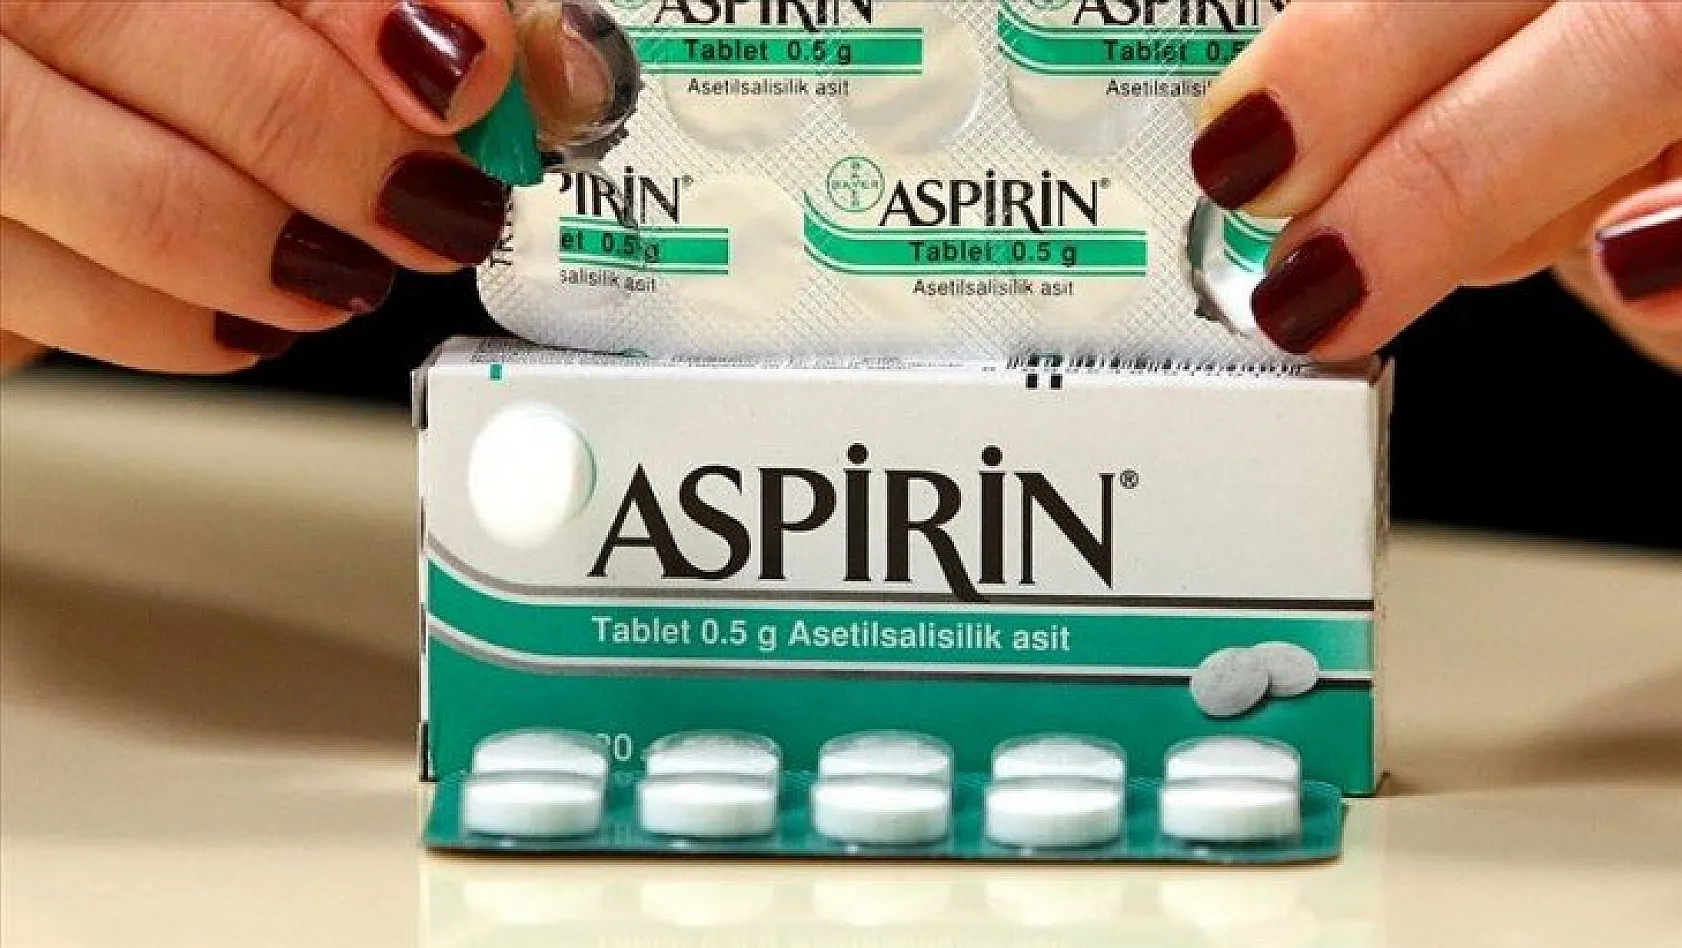 Aspirinle ilgili flaş açıklama!